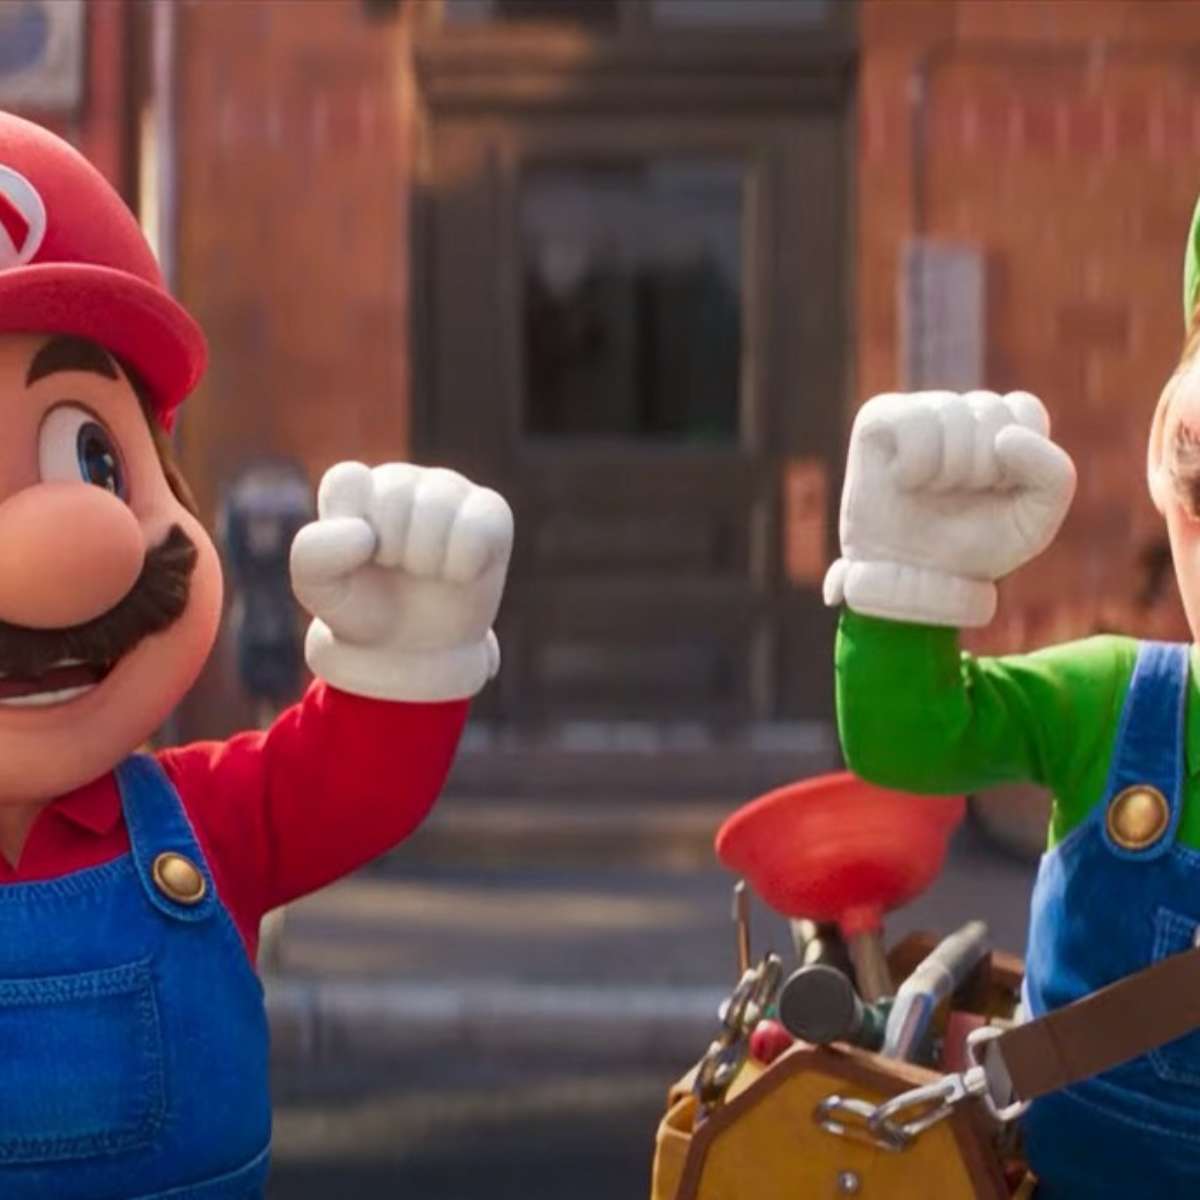 Super Mario Bros”: quando estreia o filme?